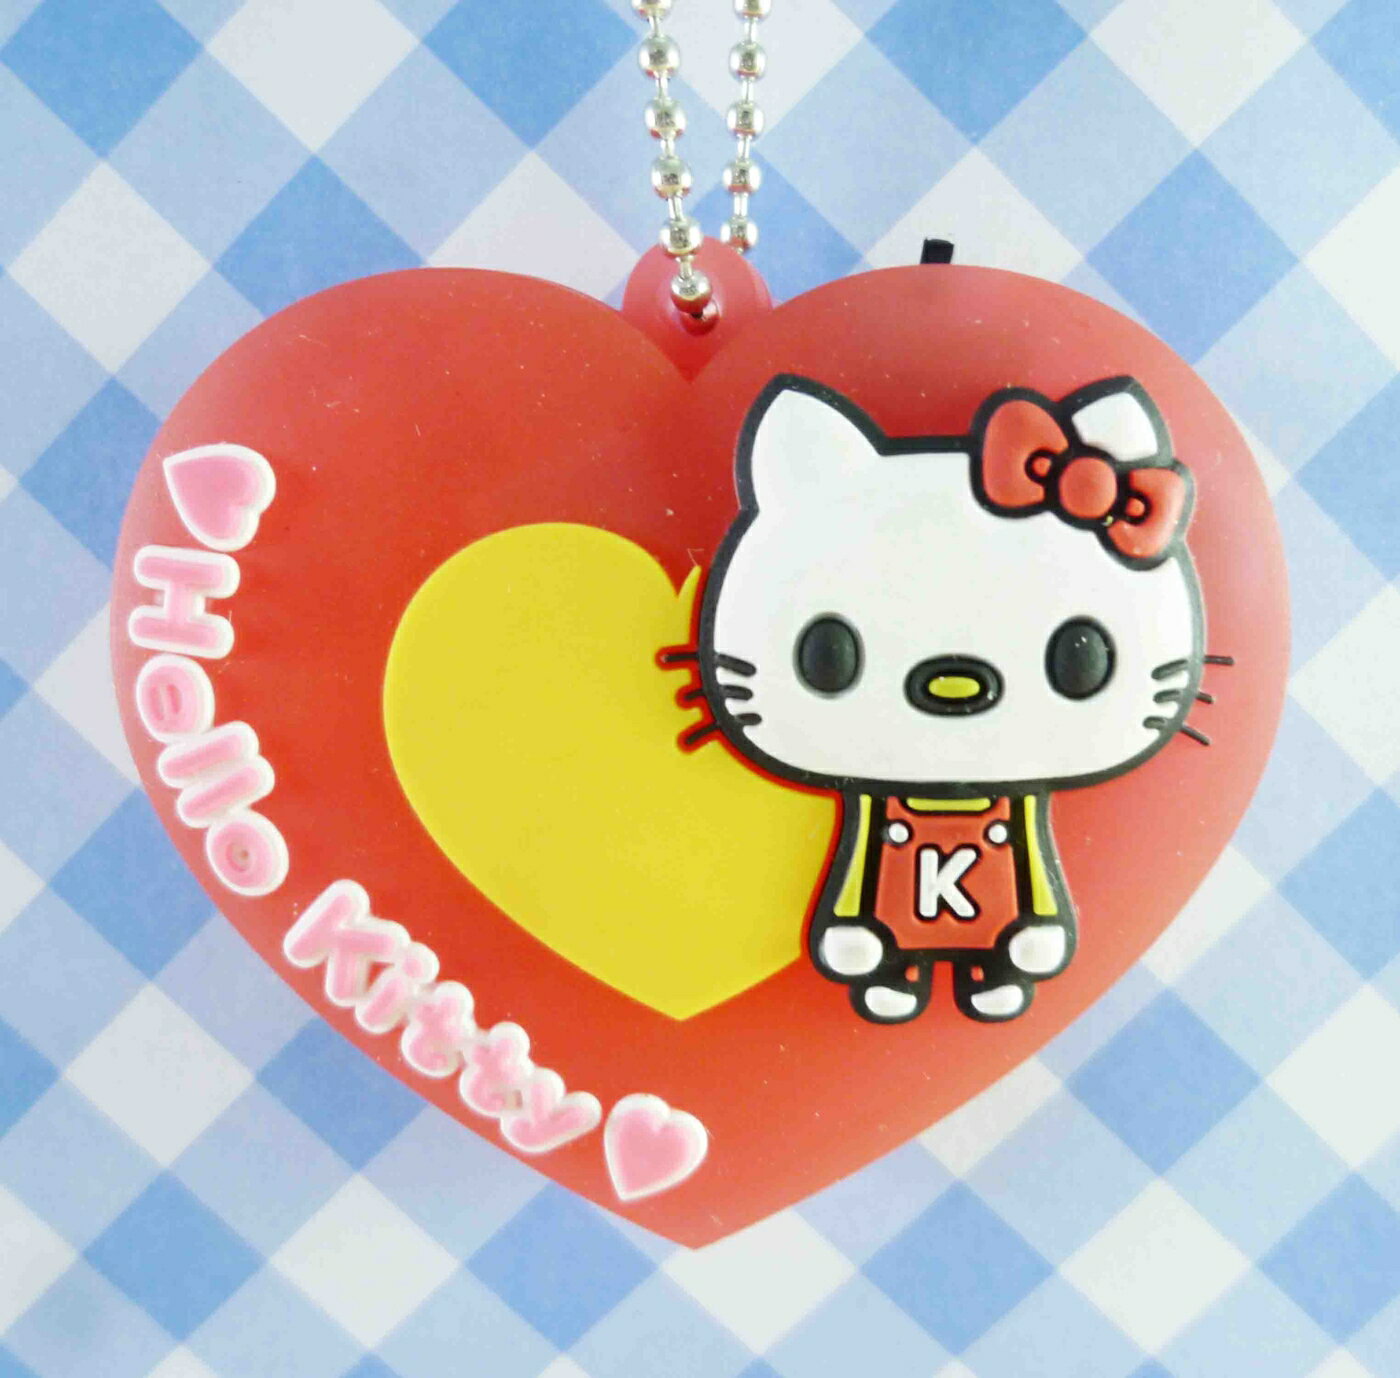 【震撼精品百貨】Hello Kitty 凱蒂貓 KITTY鑰匙圈-造燈愛心 震撼日式精品百貨